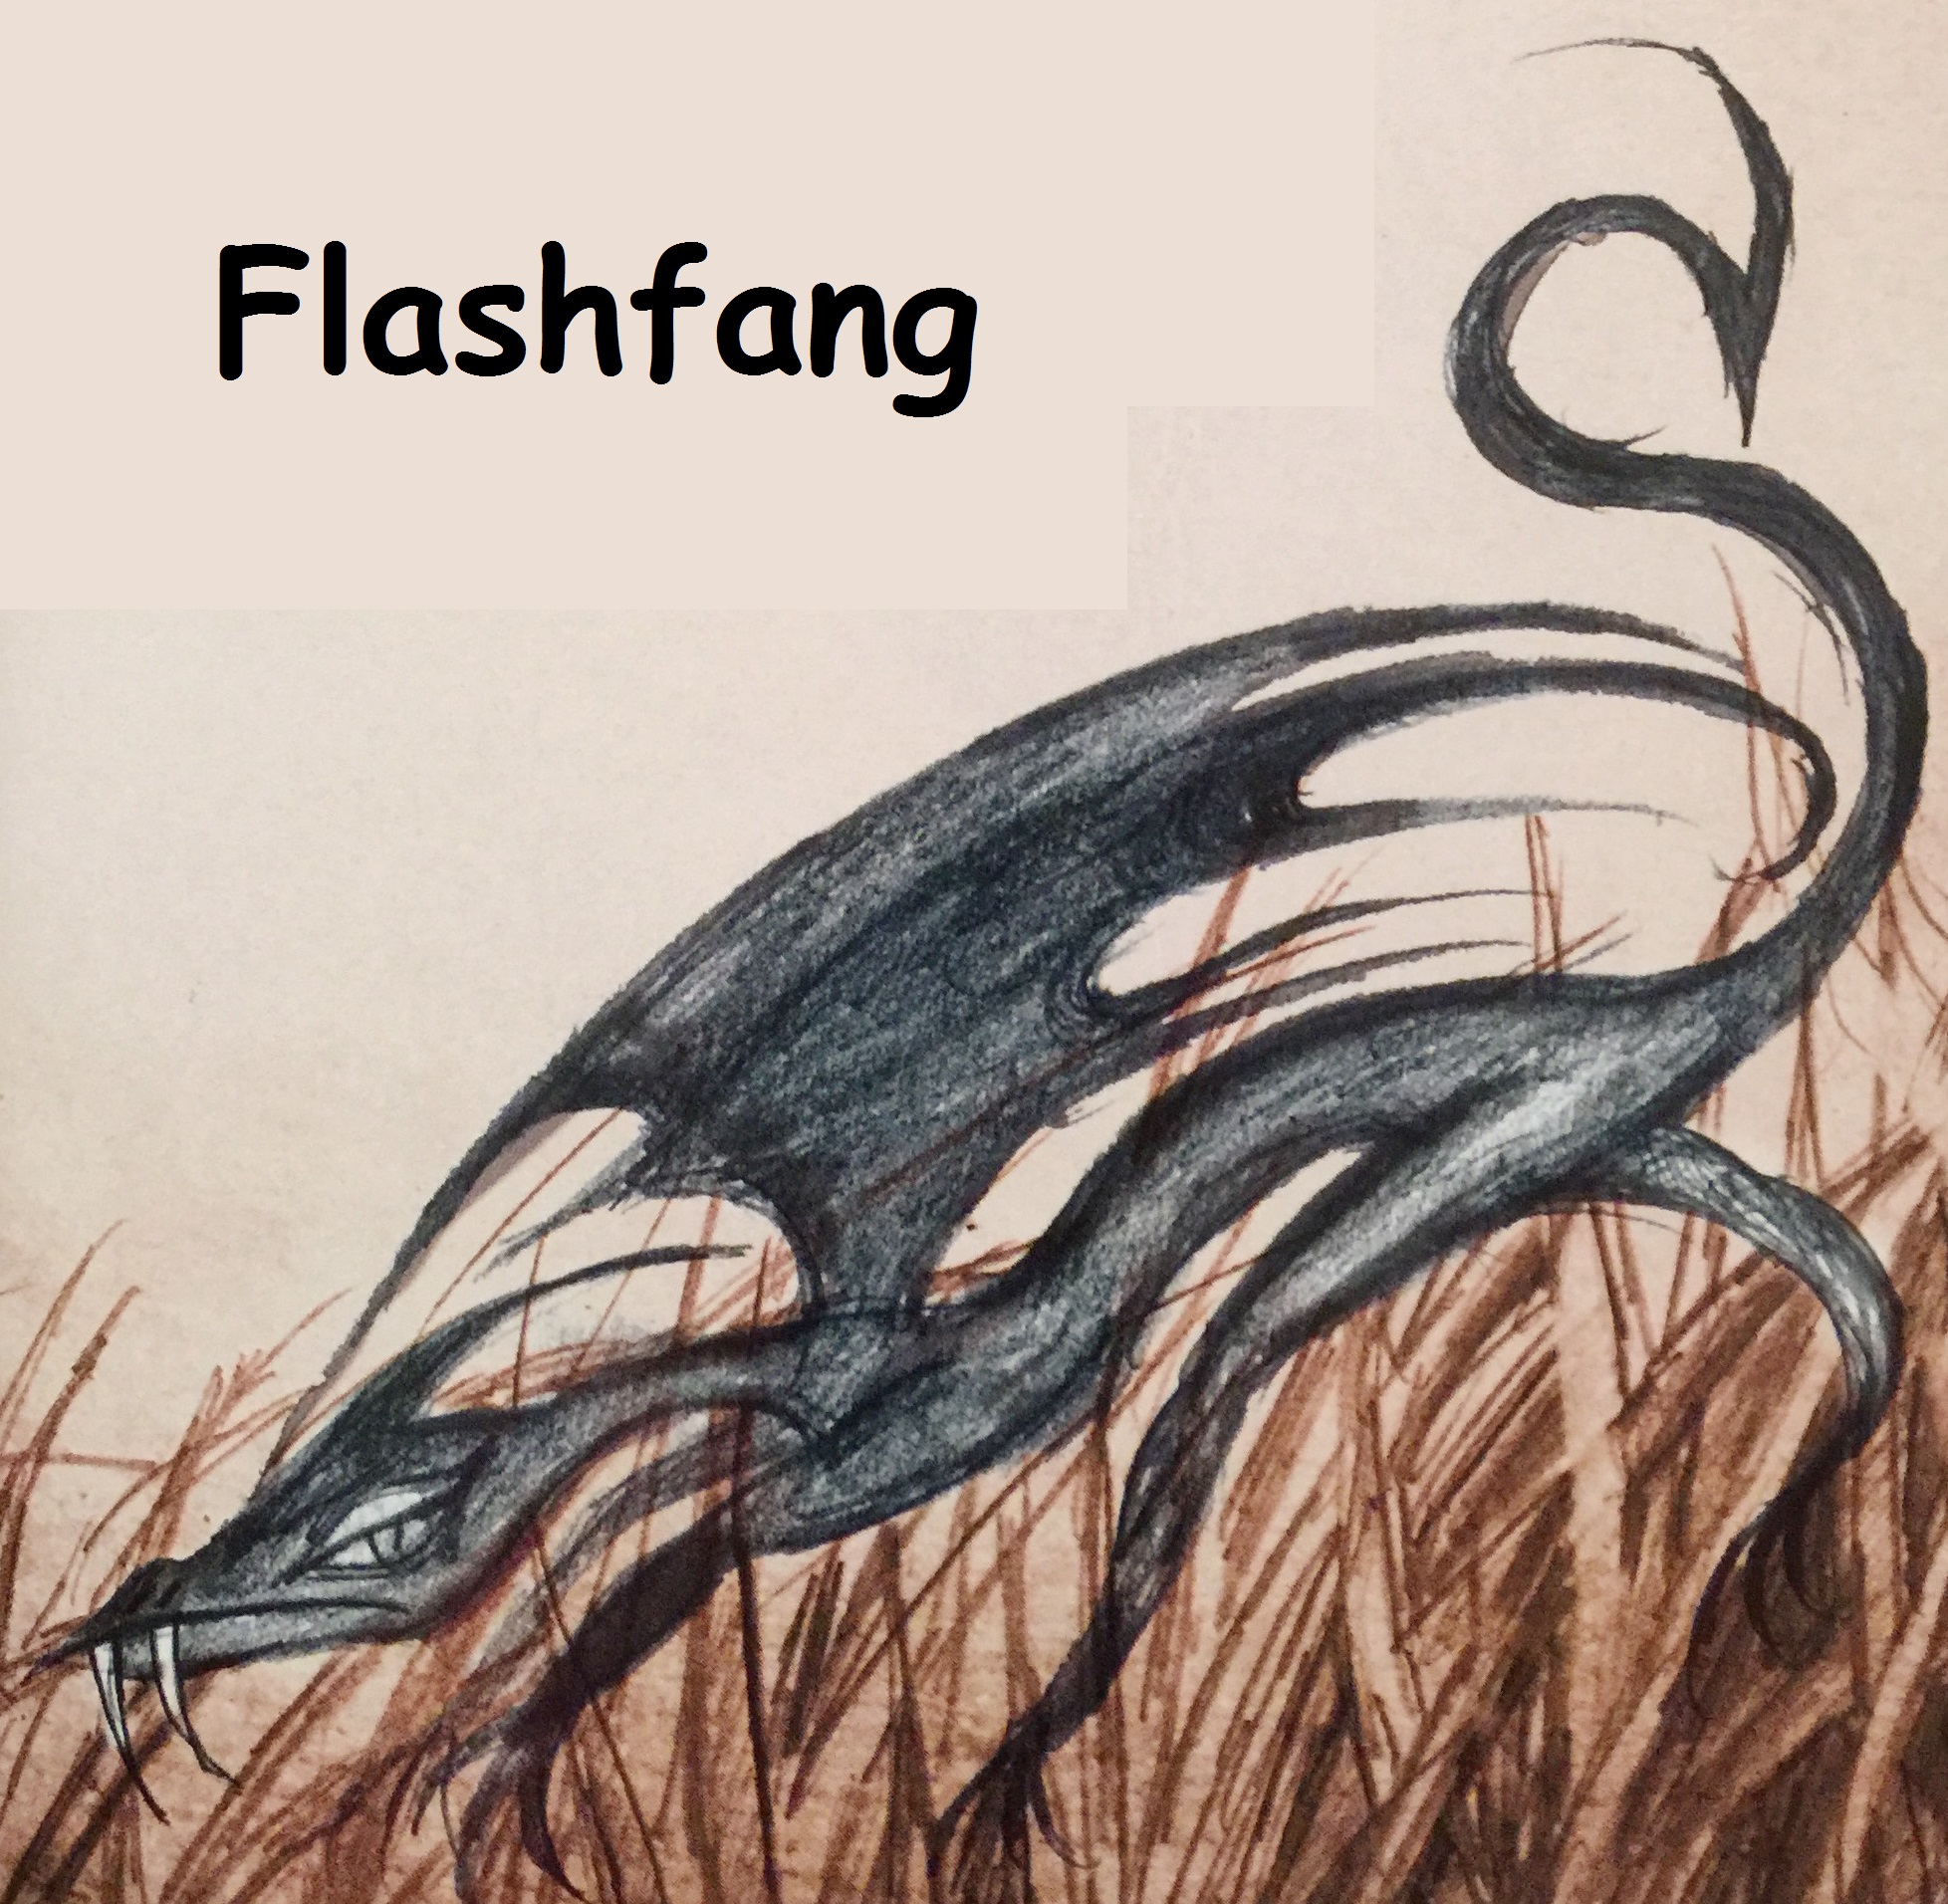 Flashfang | How to Train Your Dragon Wiki | Fandom